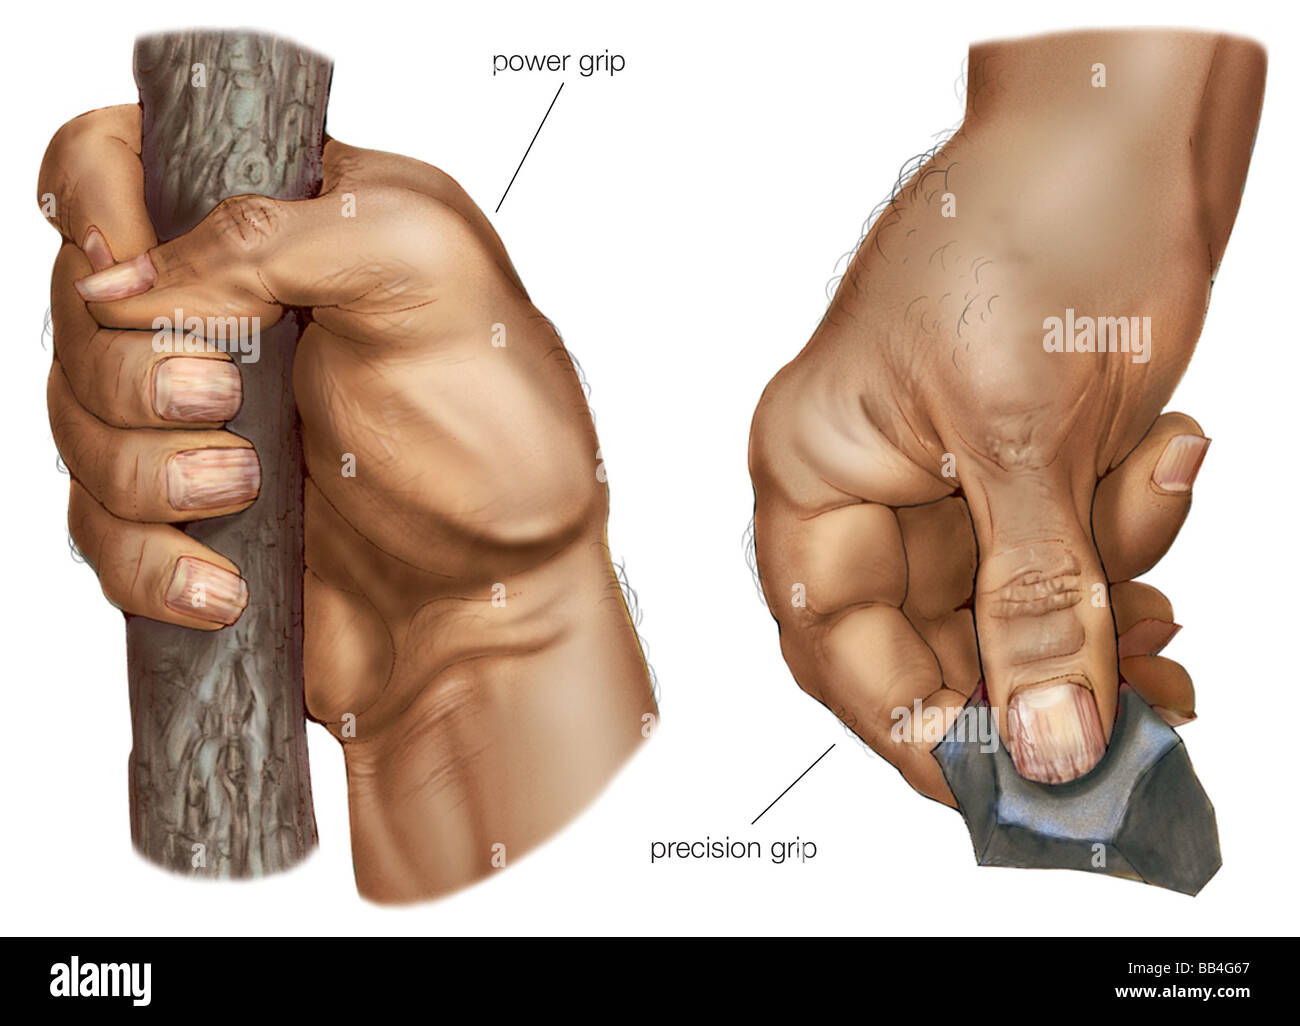 Ein voll opponierbaren Daumen gibt der menschlichen Hand seine einzigartige Power-Grip (links) und Präzision Griff (rechts). Stockfoto